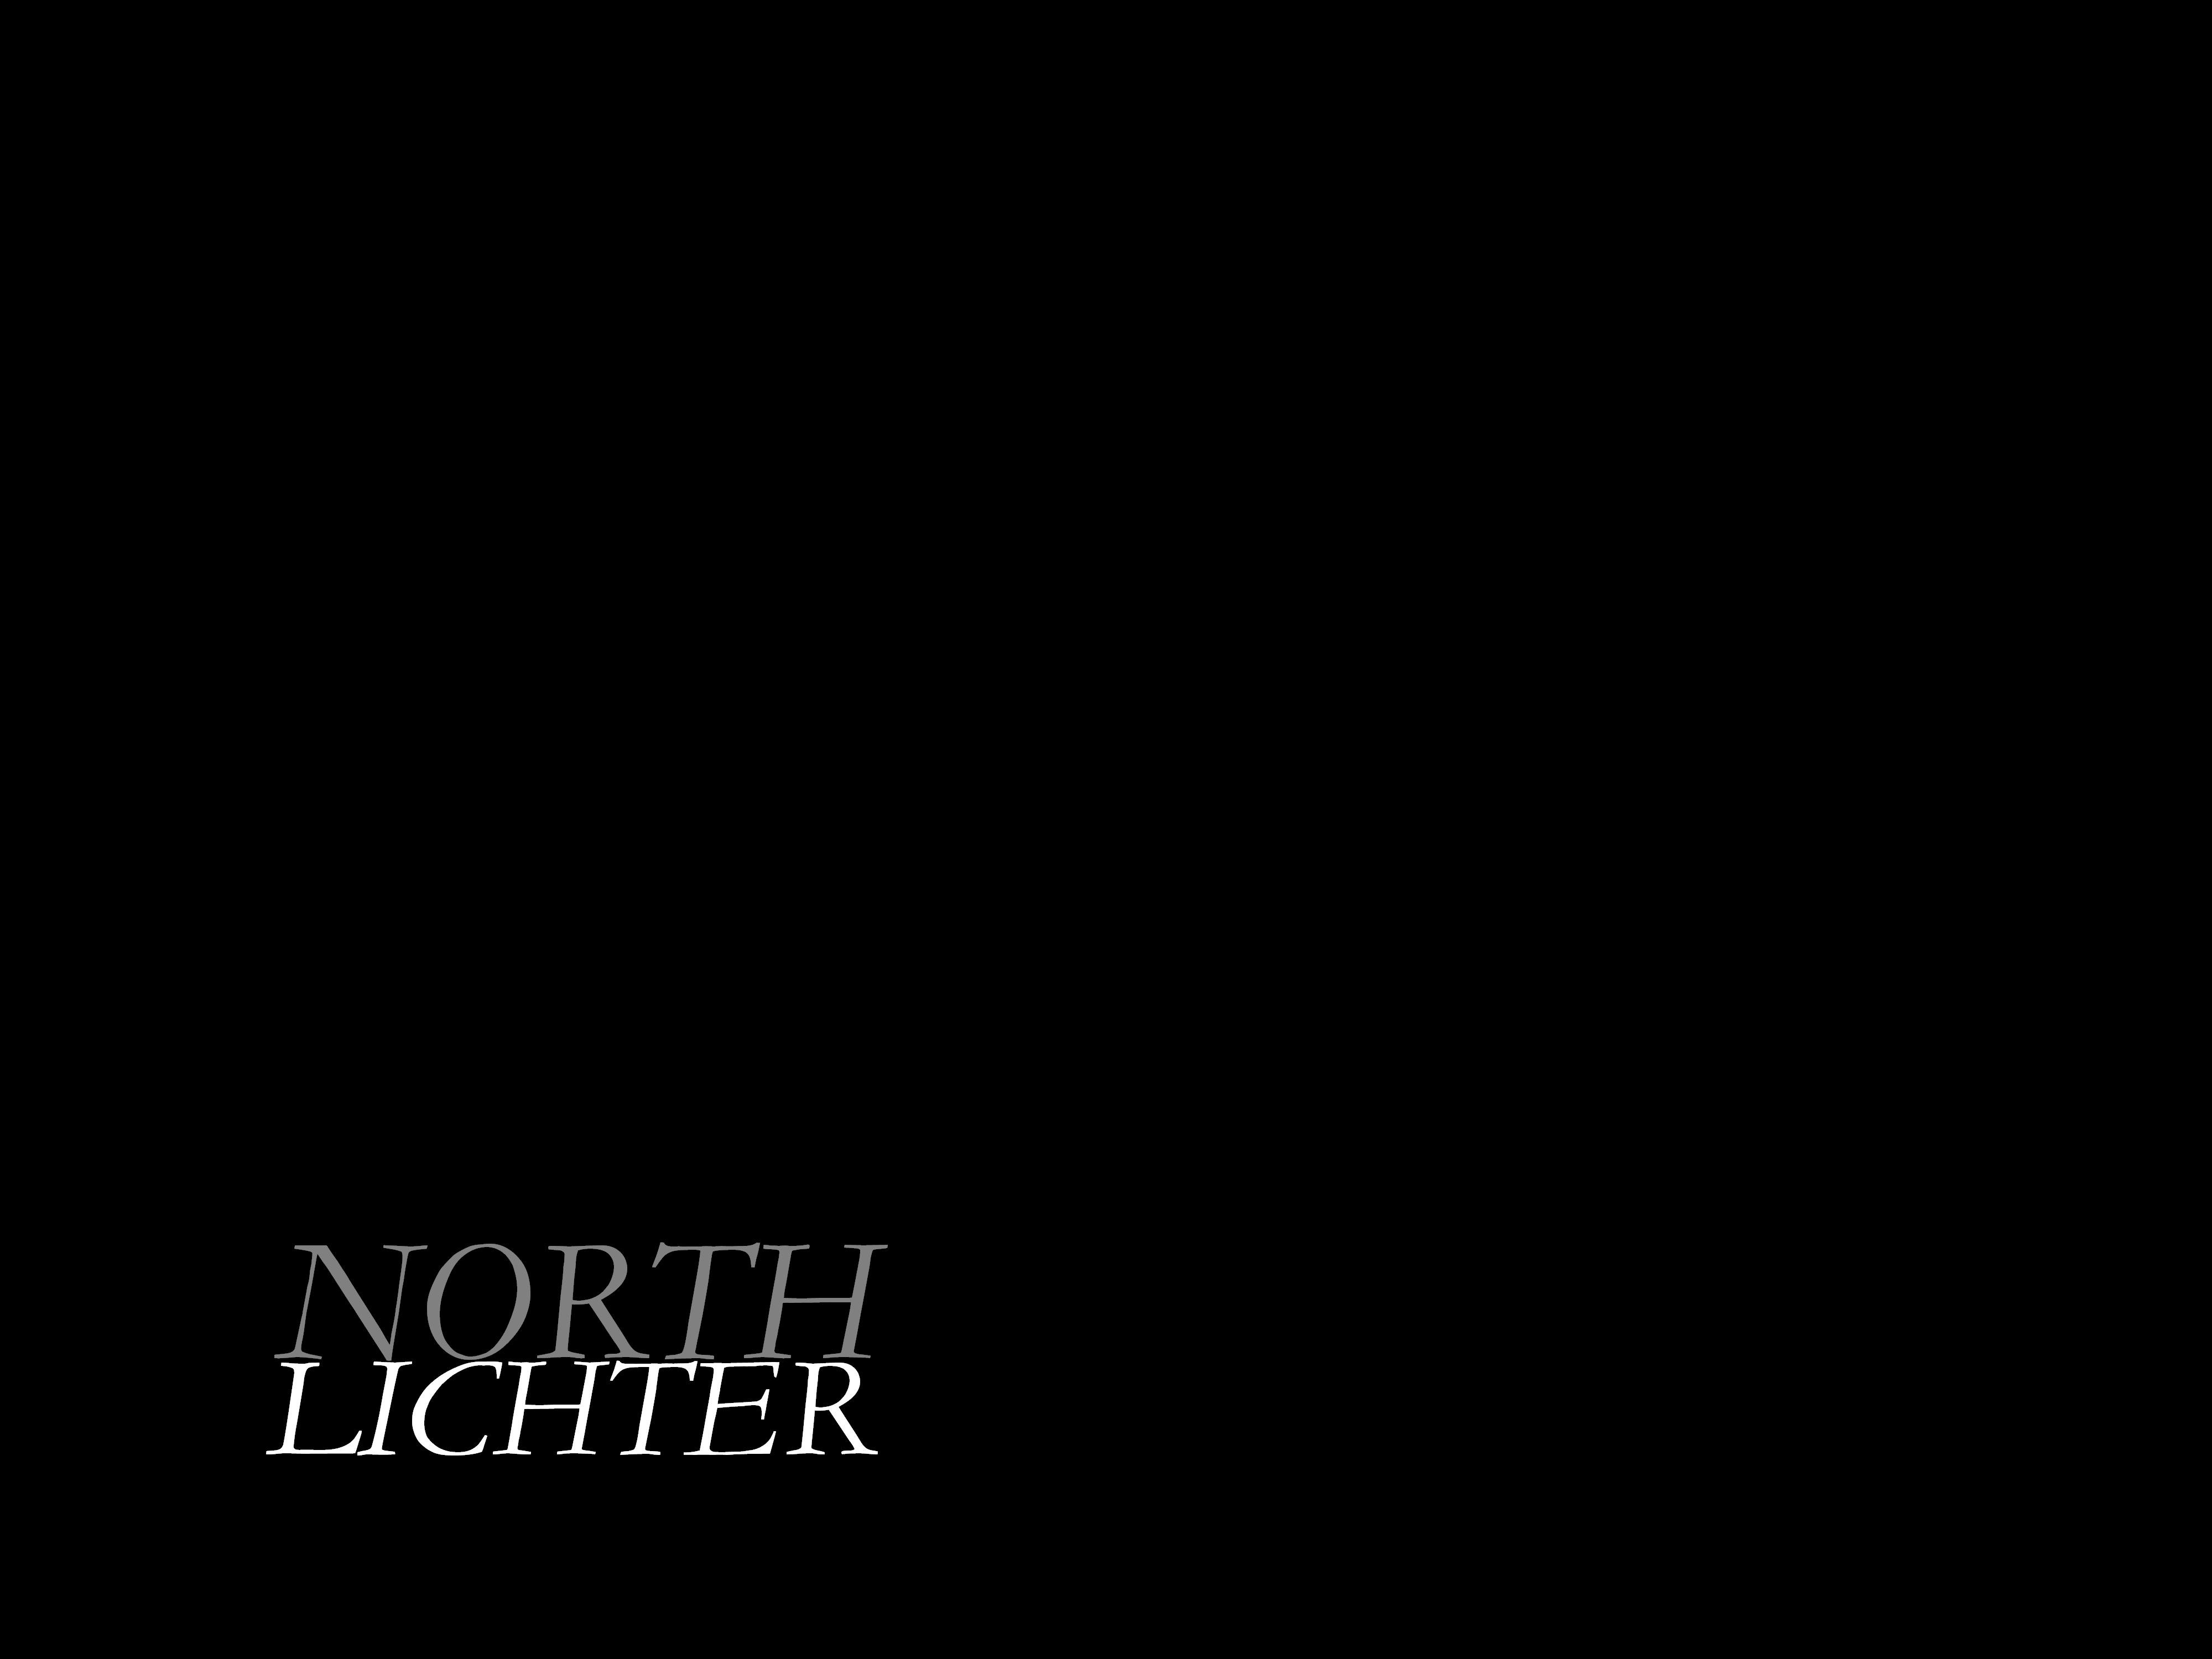 18-03-12 Northlichter (1)